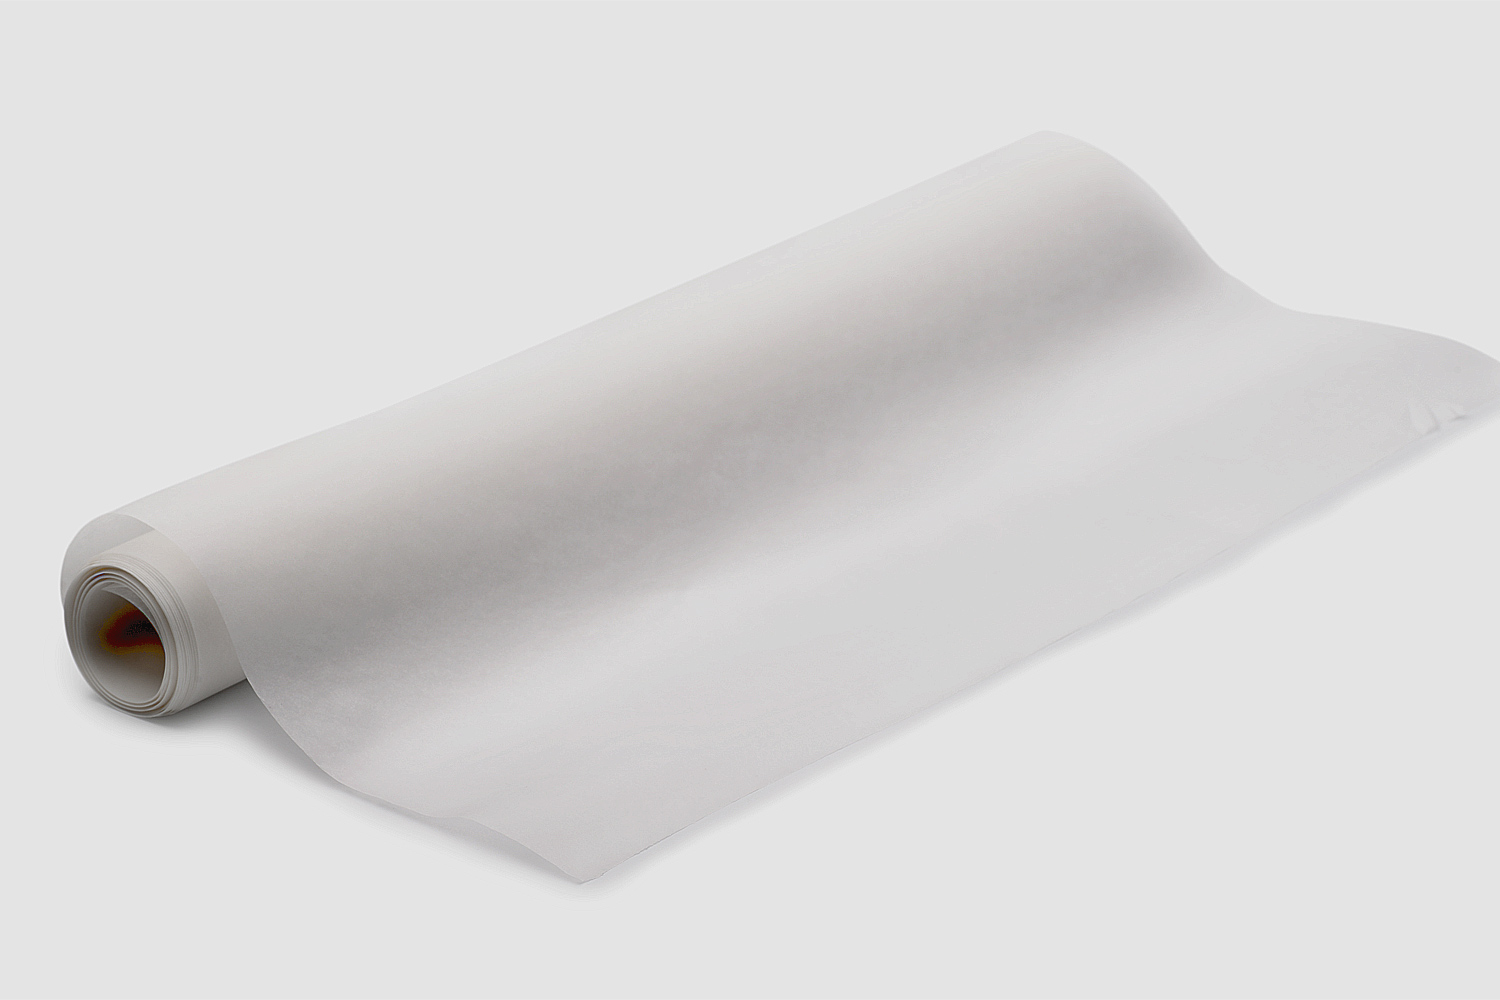 Rouleau de papier calque blanc - Papier calque - 10 Doigts